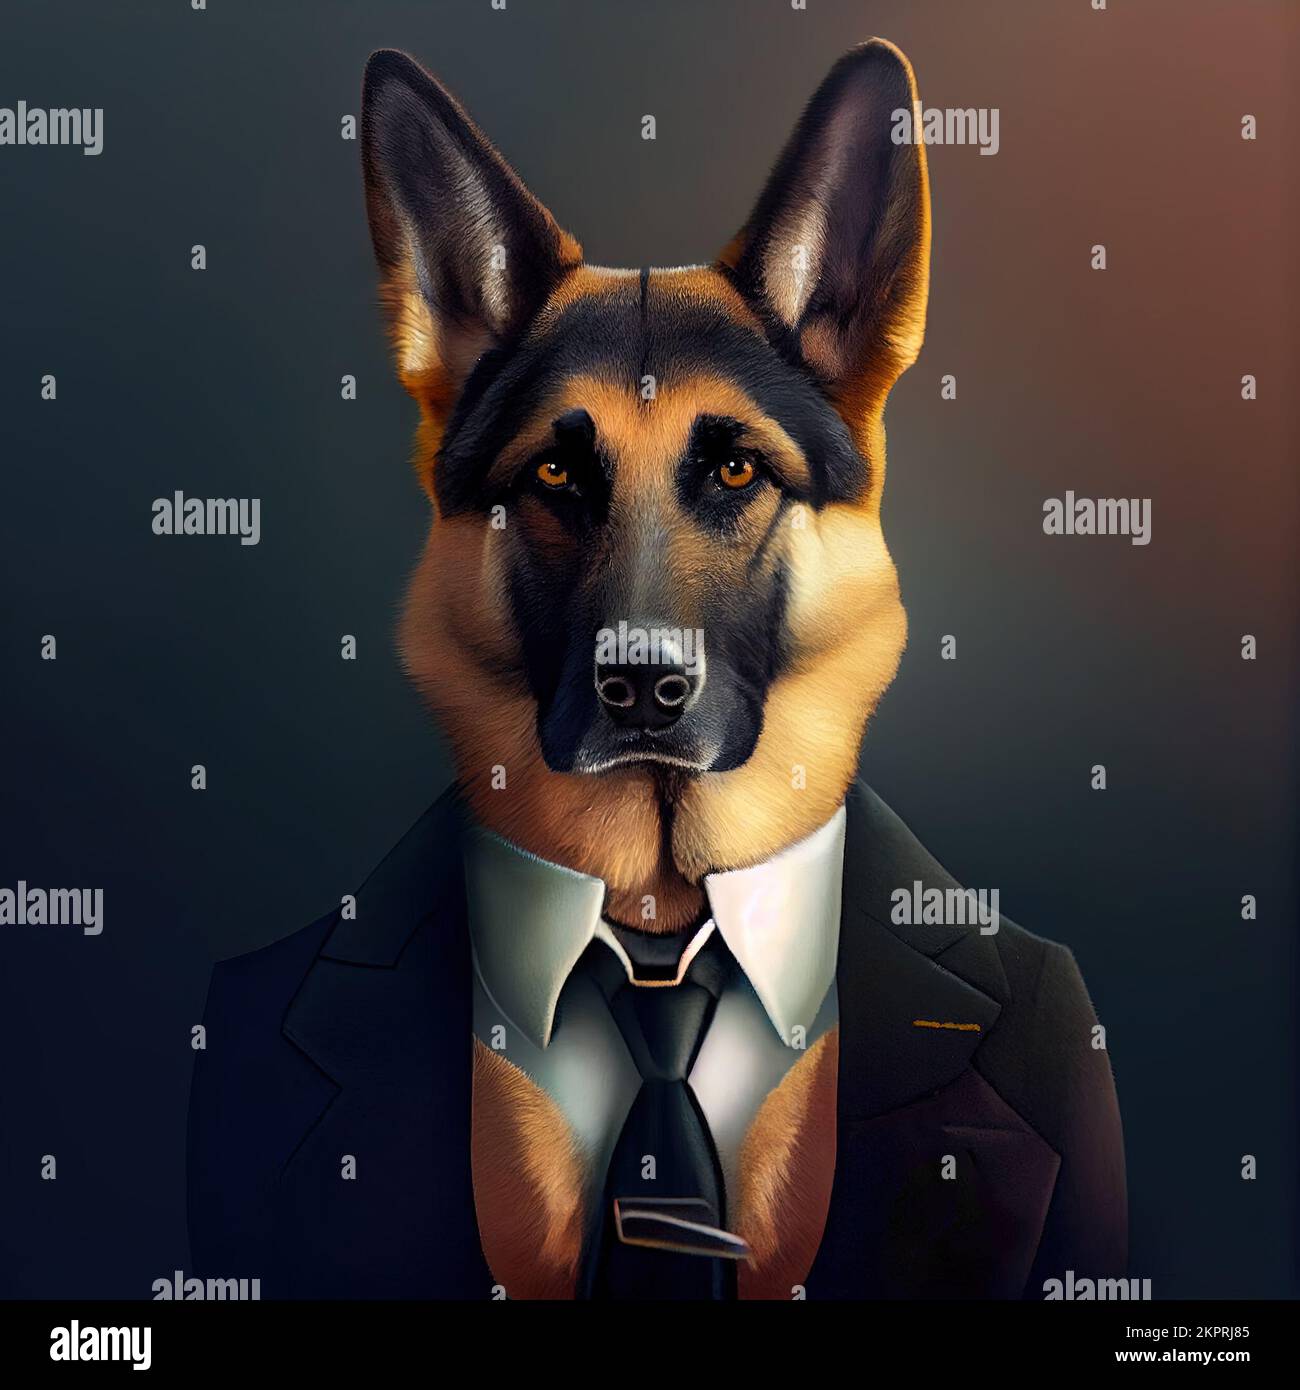 Estudio antropomórfico de un lindo perro pastor alemán en un traje. Ilustración generada digitalmente. Foto de stock